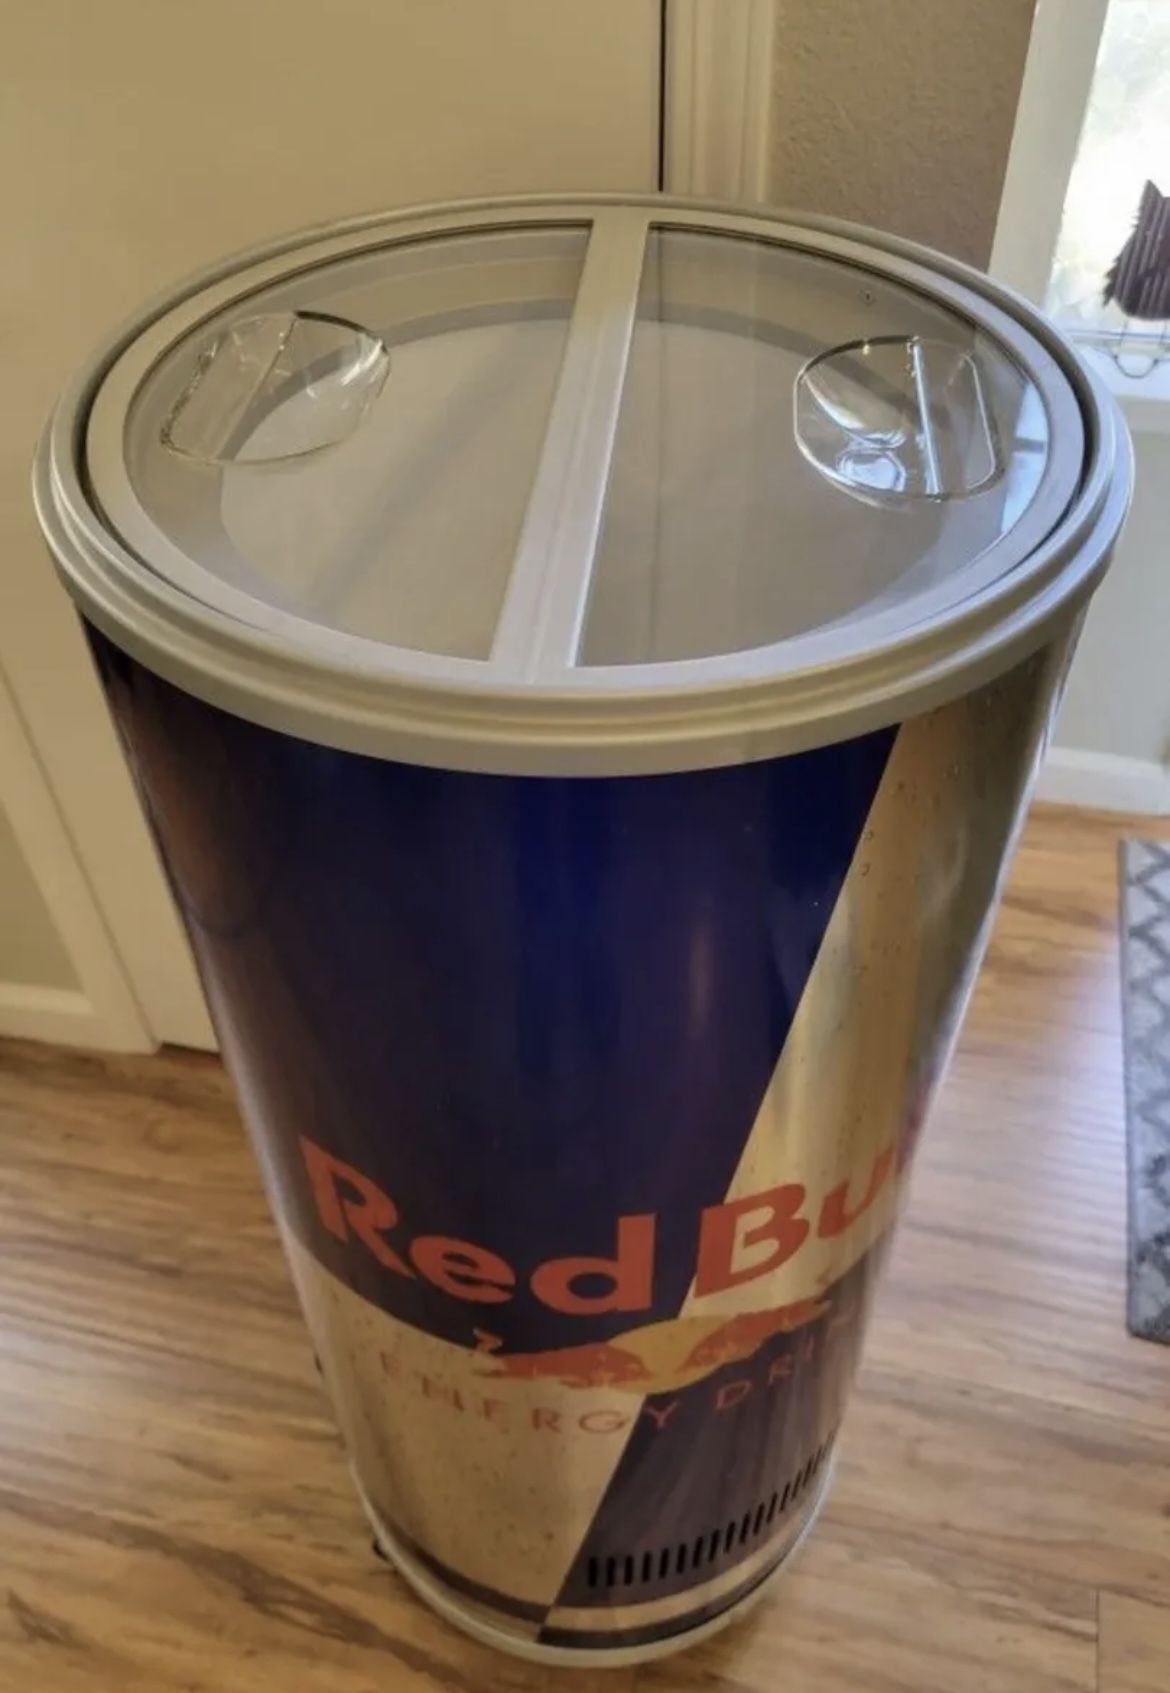 Red Bull Cooler 